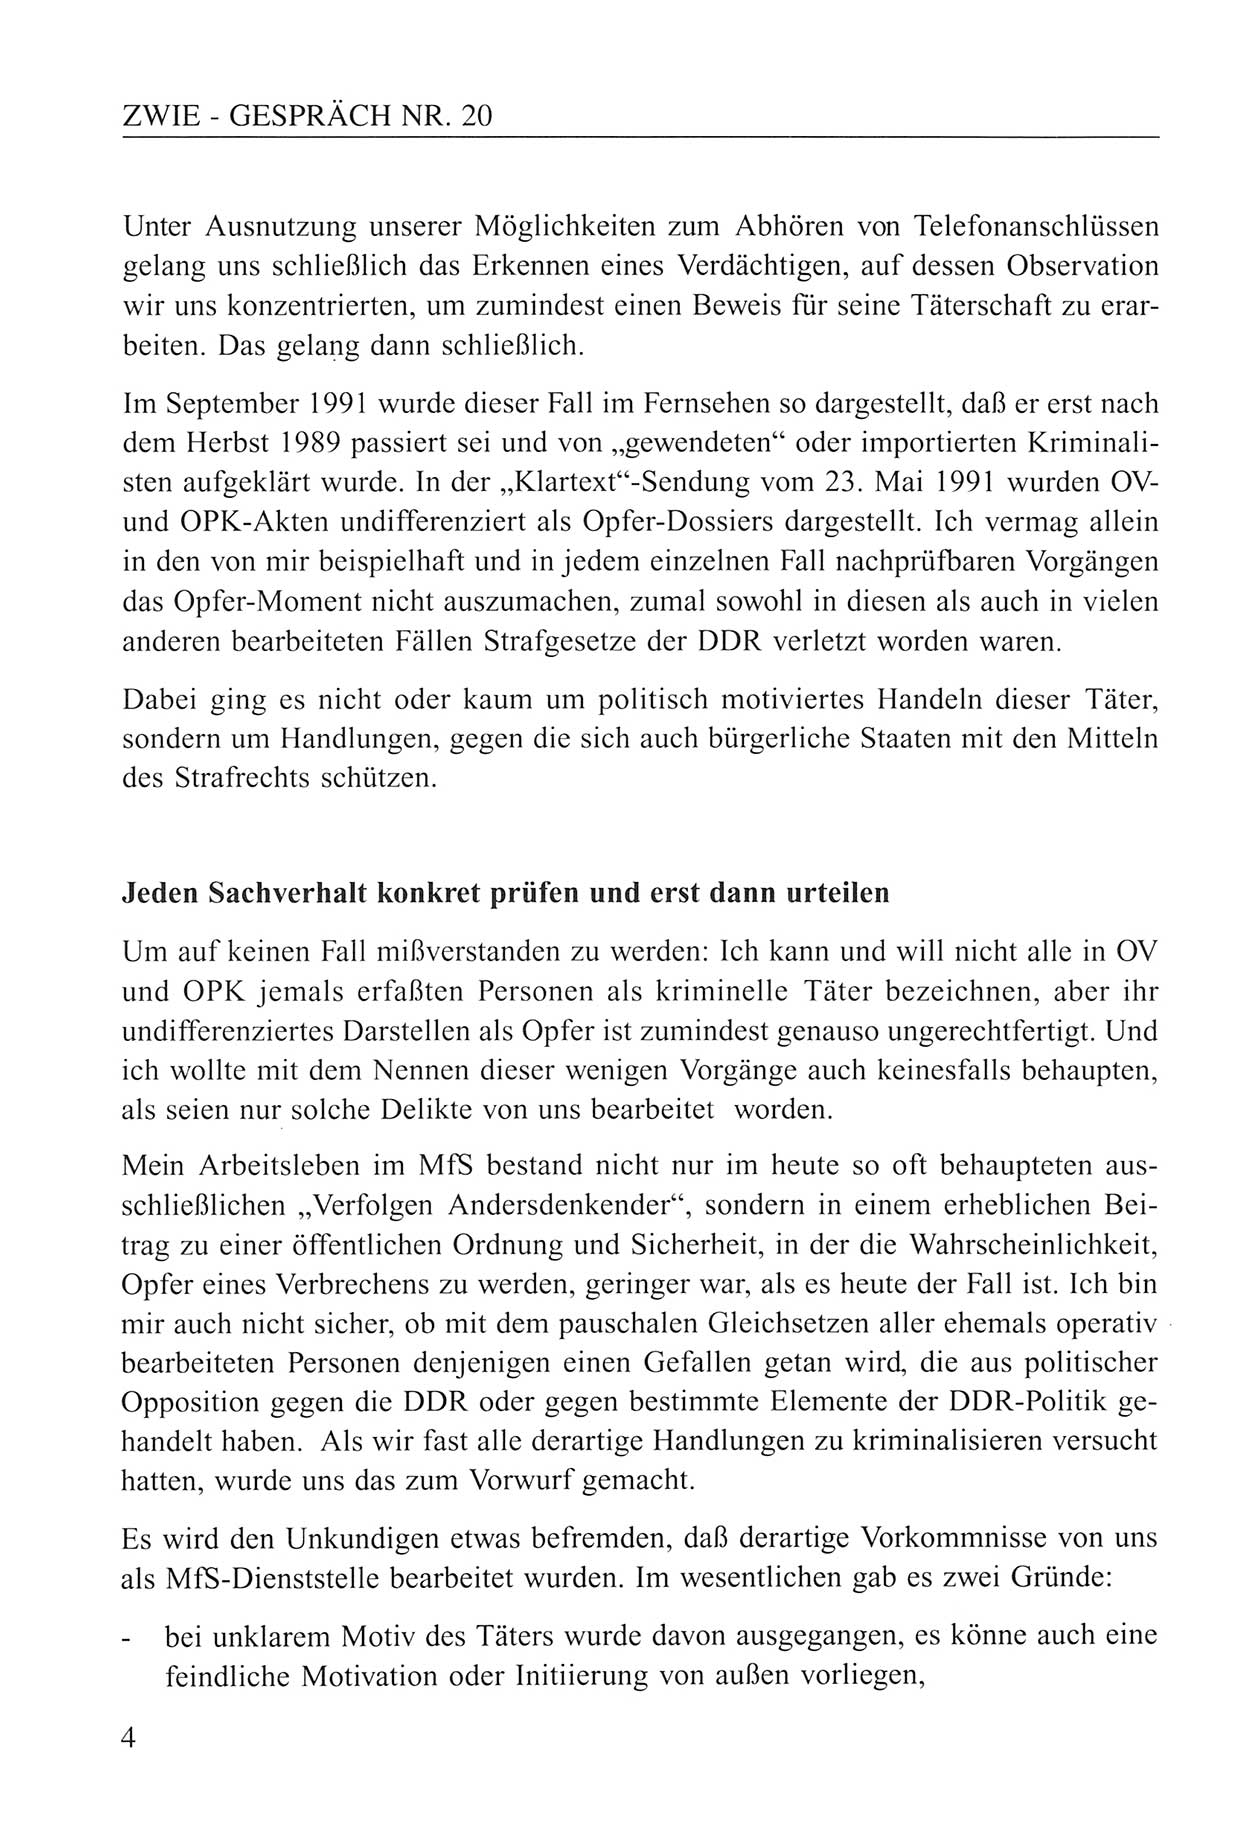 Zwie-Gespräch, Beiträge zum Umgang mit der Staatssicherheits-Vergangenheit [Deutsche Demokratische Republik (DDR)], Ausgabe Nr. 20, Berlin 1994, Seite 4 (Zwie-Gespr. Ausg. 20 1994, S. 4)